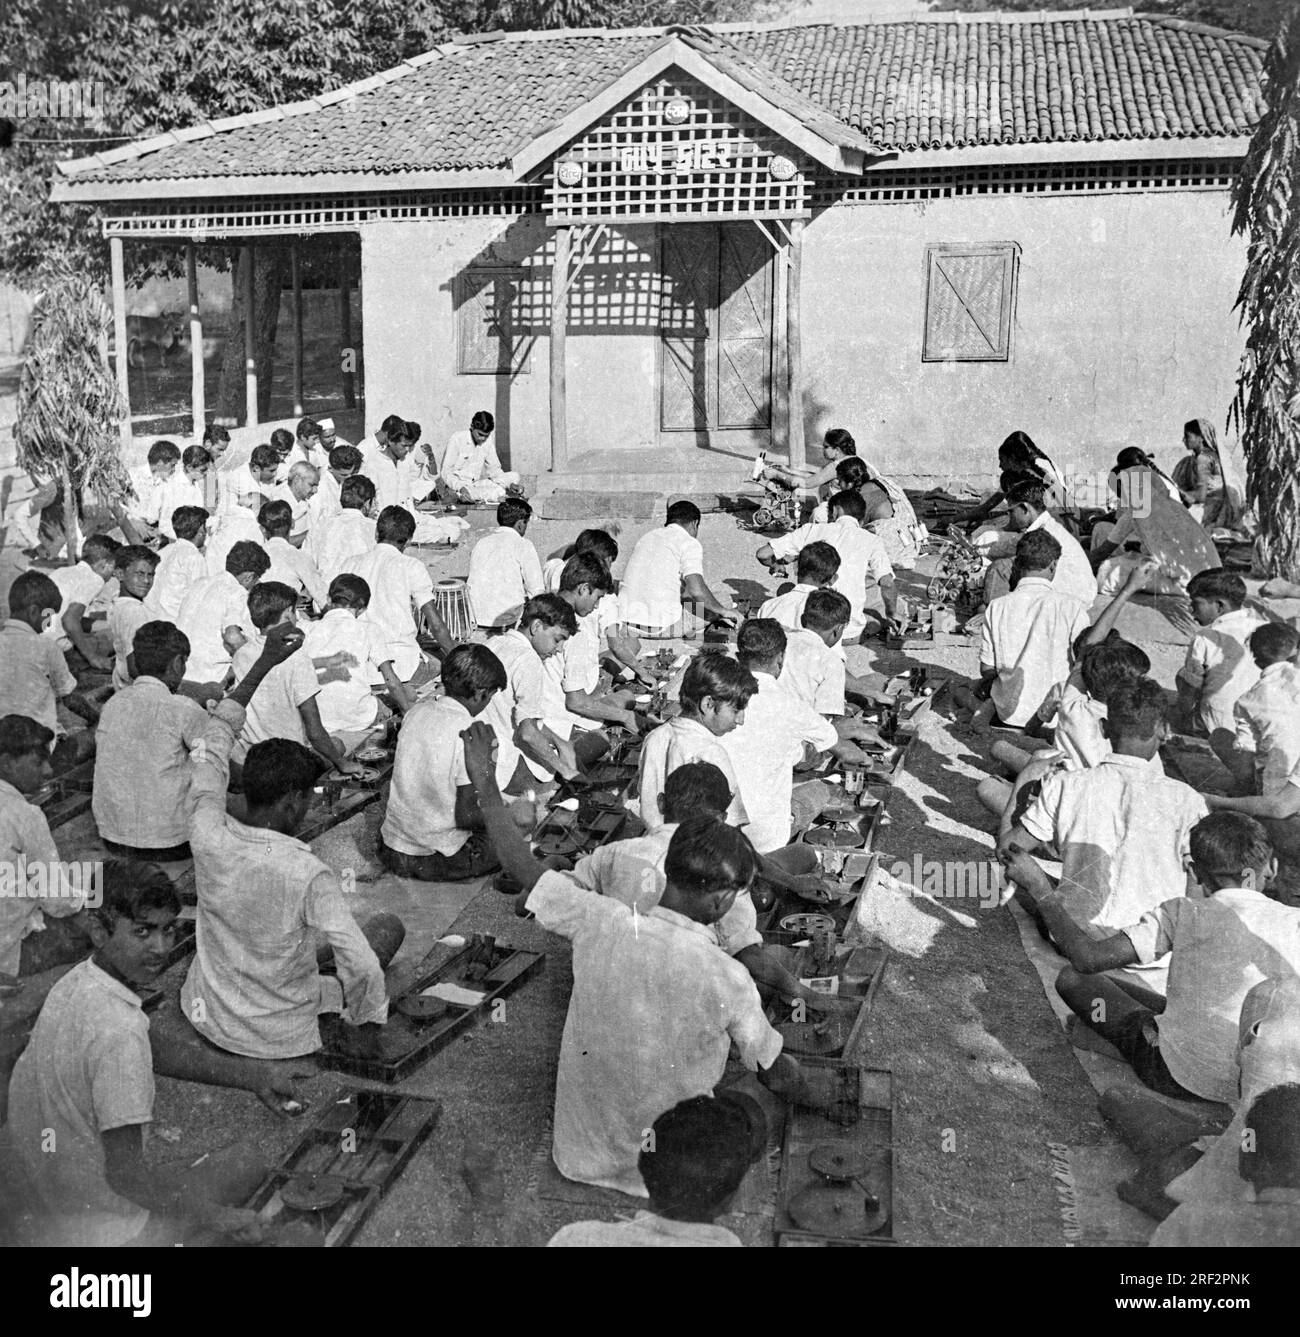 Vecchia immagine vintage in bianco e nero degli anni '1900 dei bambini delle scuole indiane che imparano a girare i filati usano l'India 1940s Foto Stock